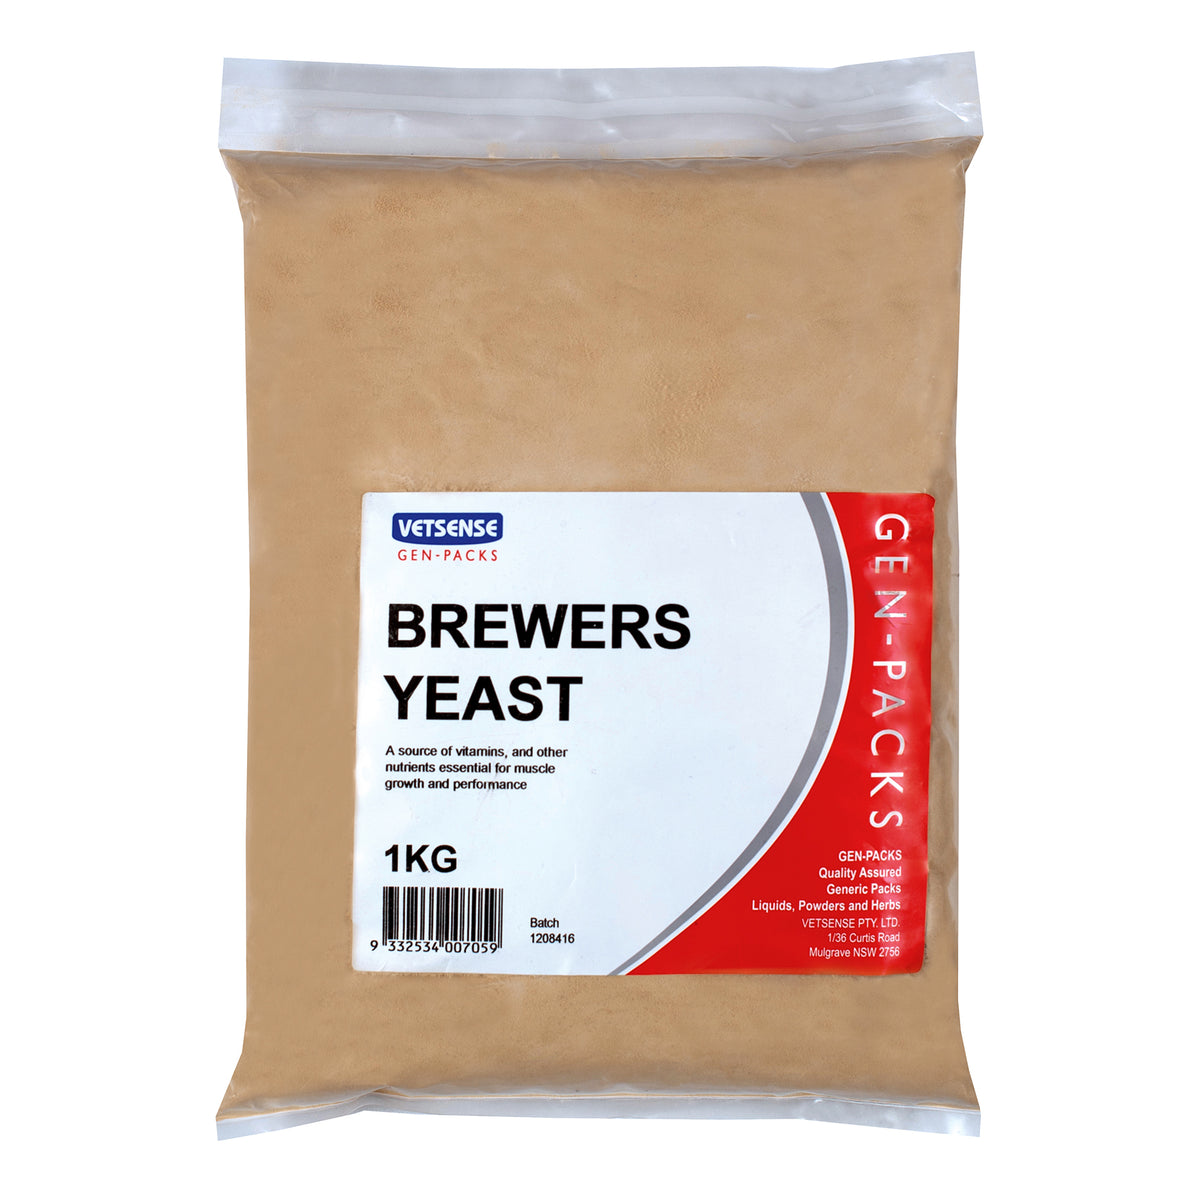 Vetsense Gen Packs Brewers Yeast